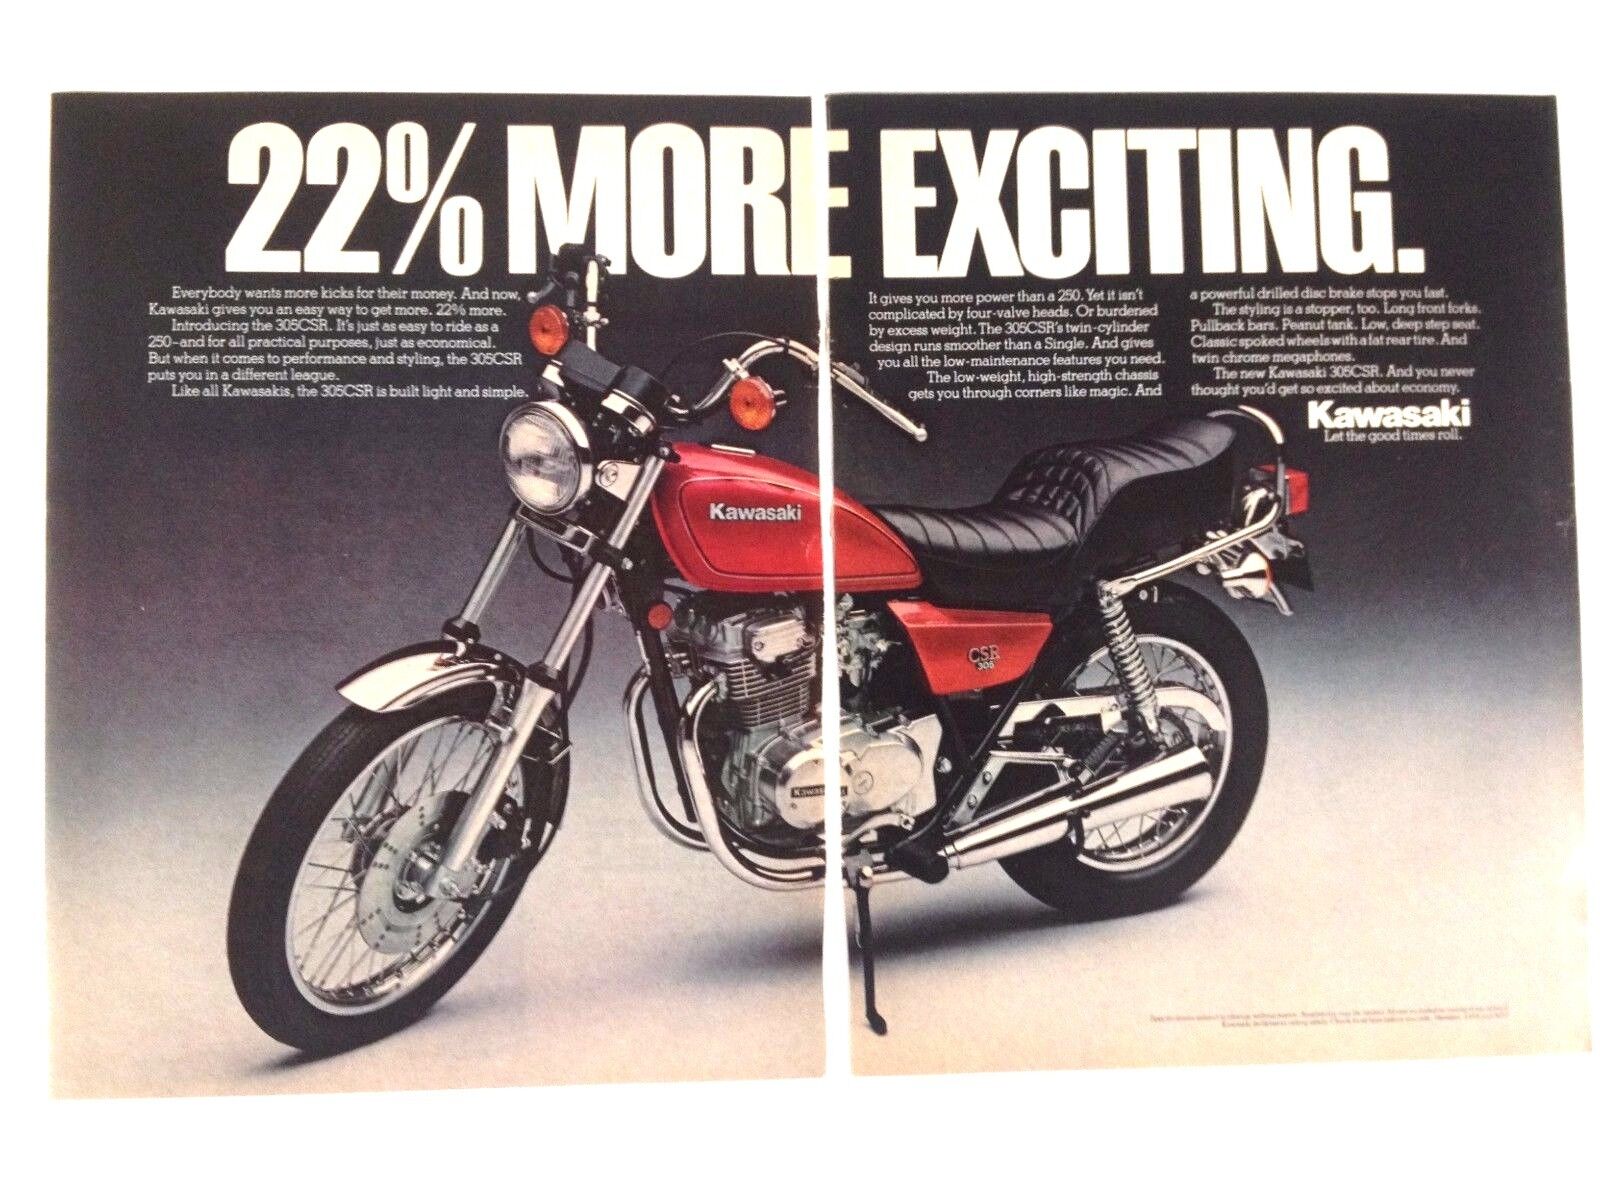 1981 Kawasaki 305CSR Motorcycle Print Ad 